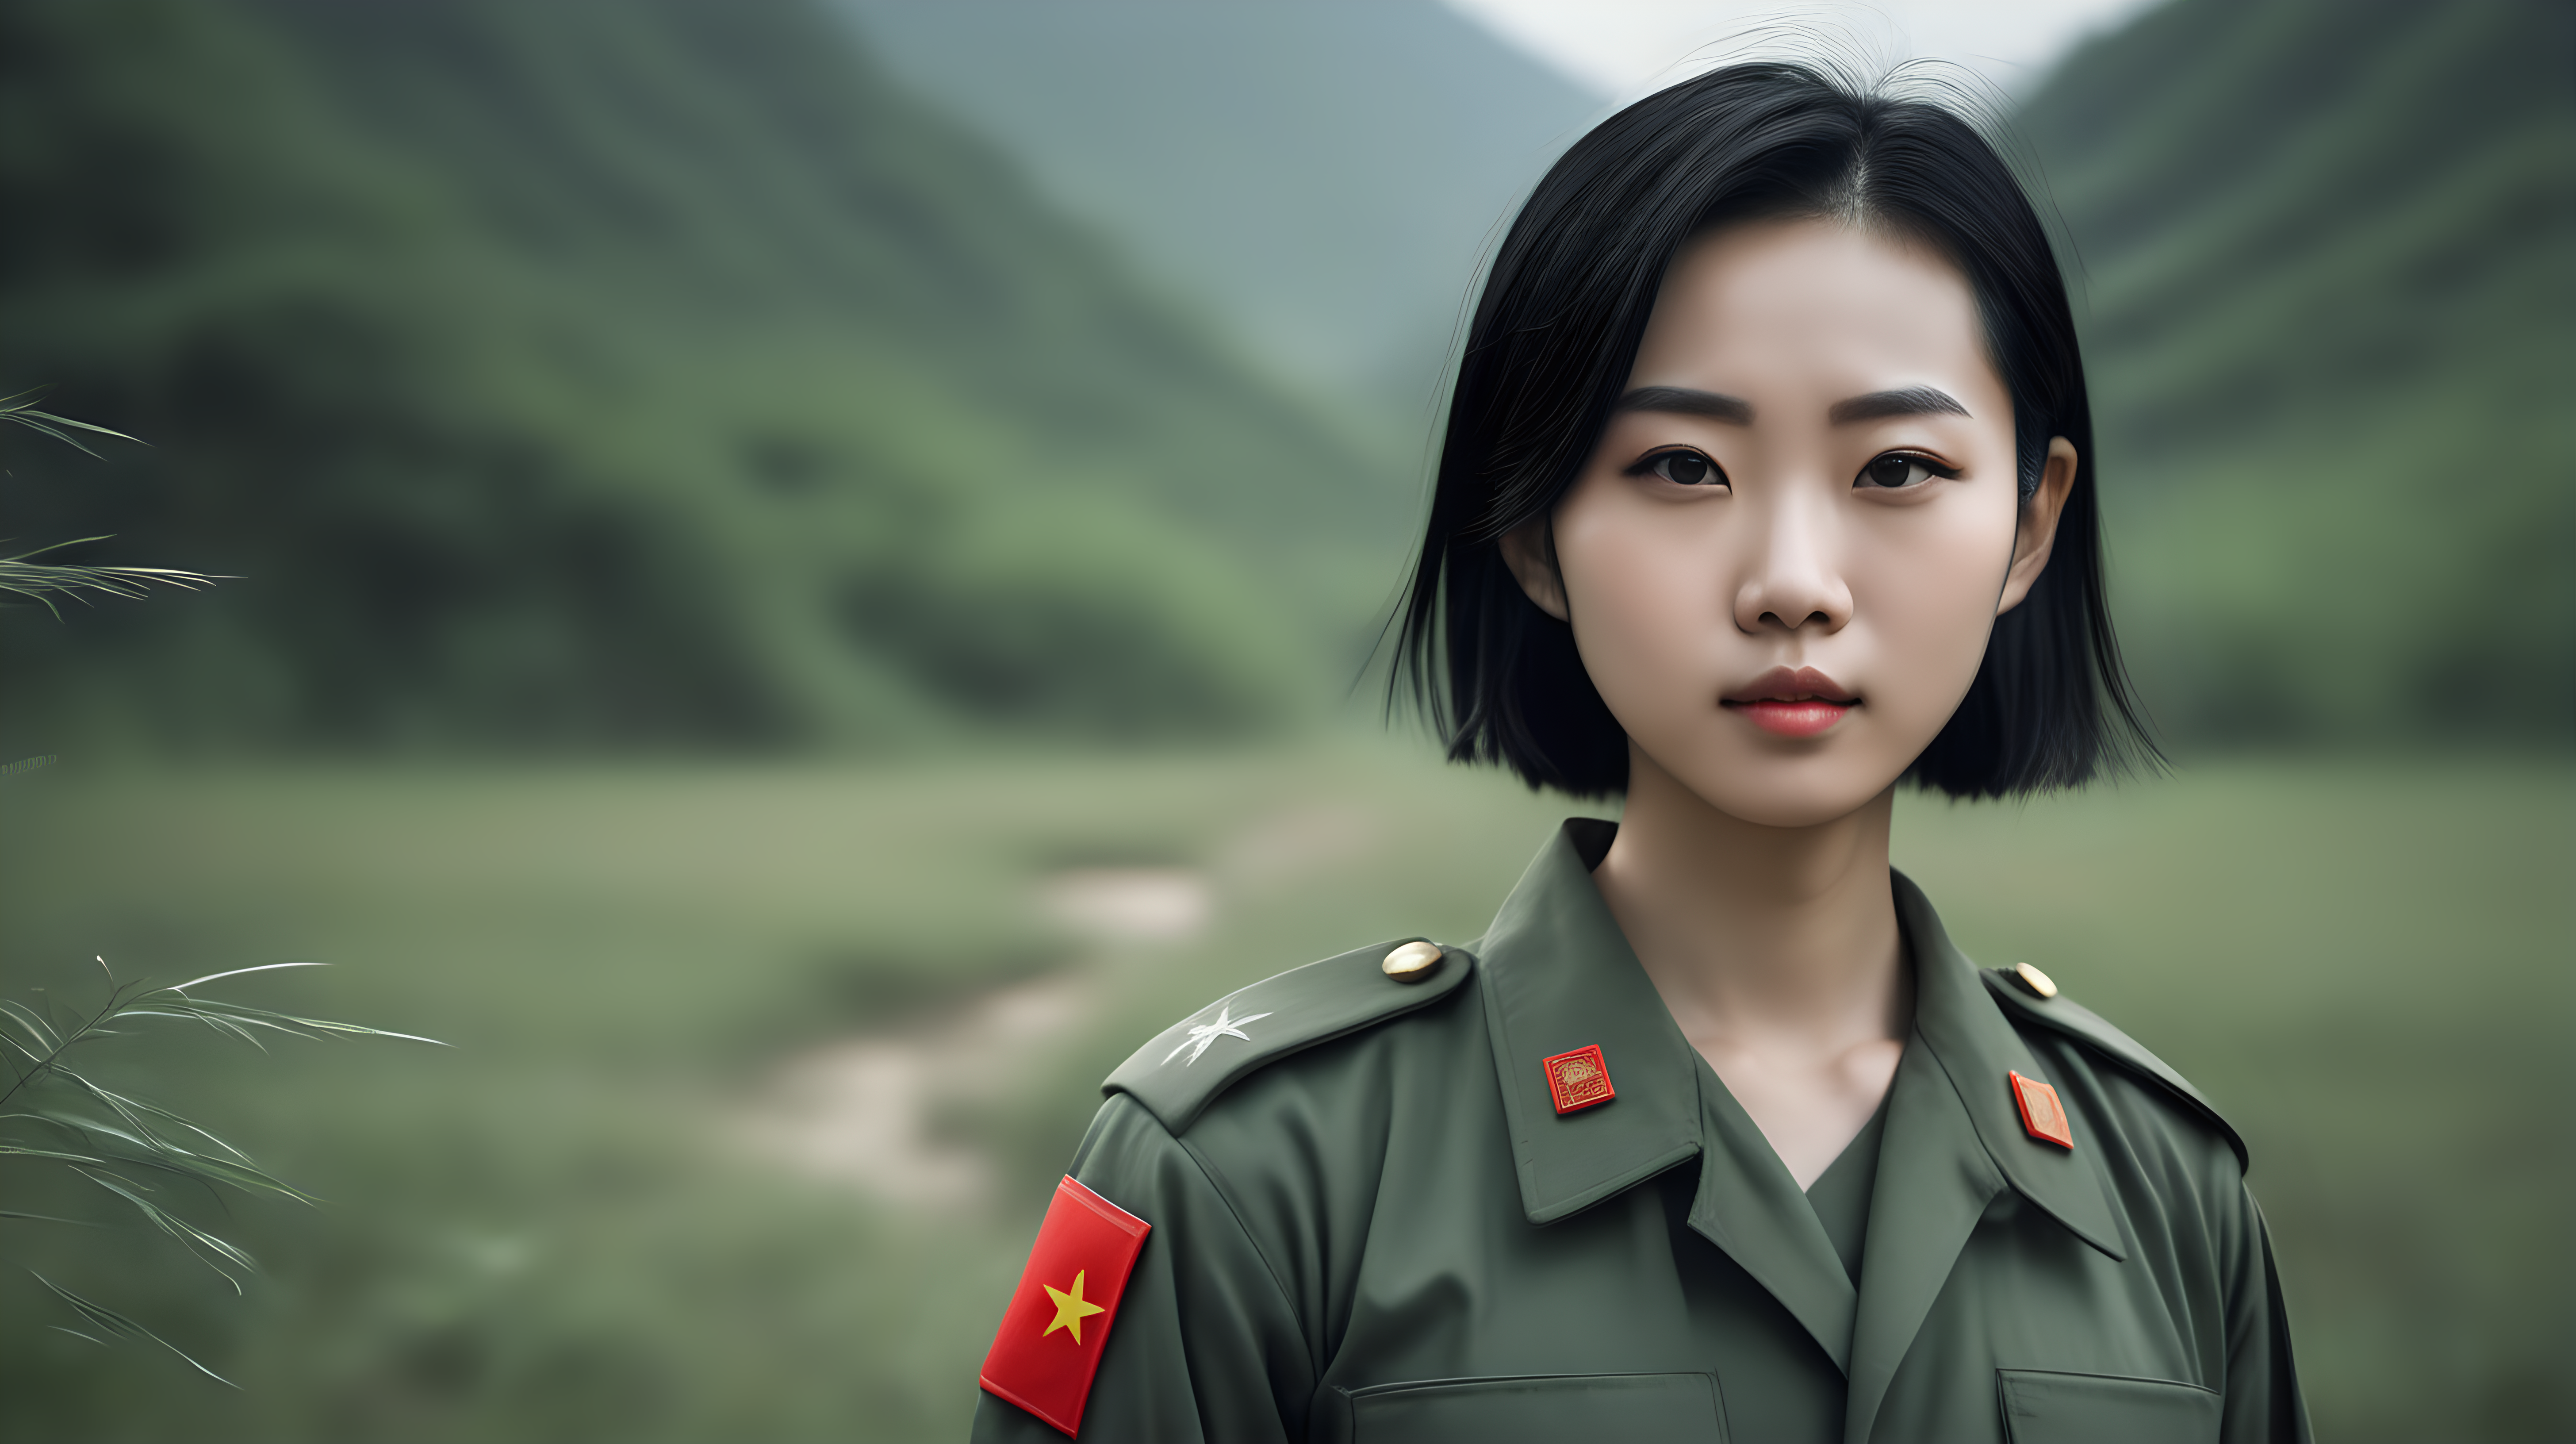 一名中国医疗女兵
青年人
黑发
短发
站在野外